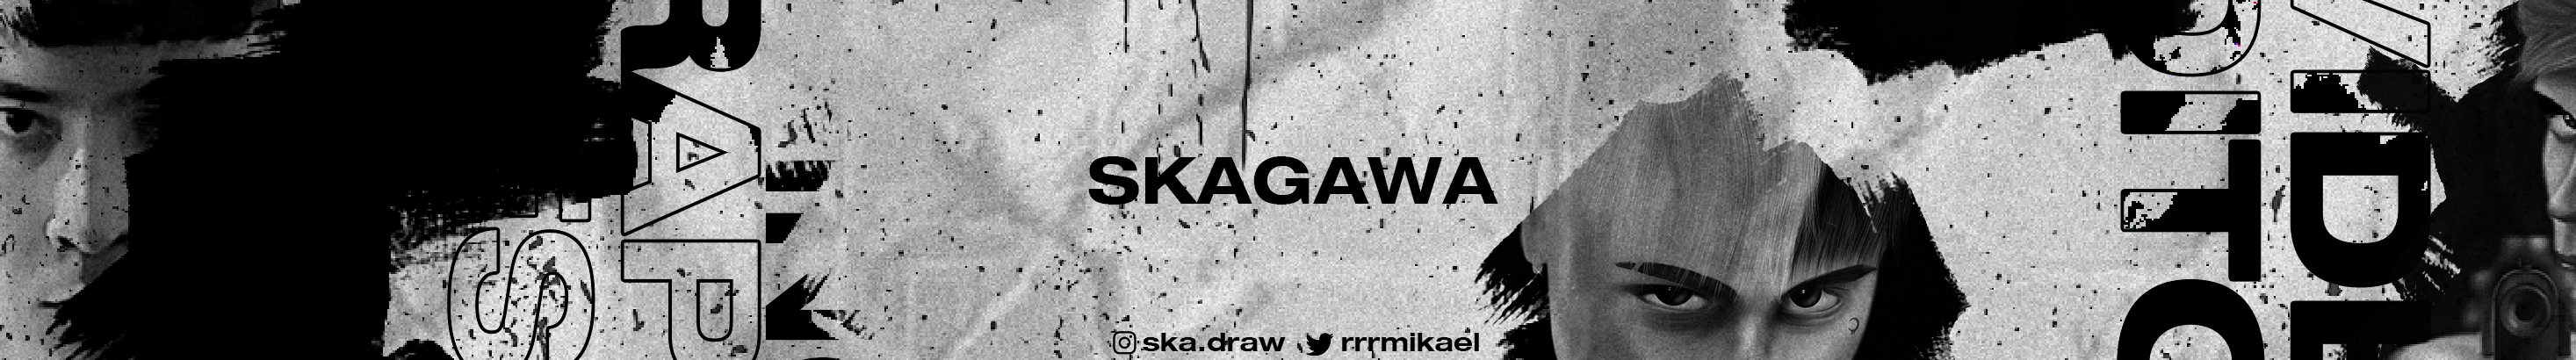 SKAGAWA 🖌's profile banner